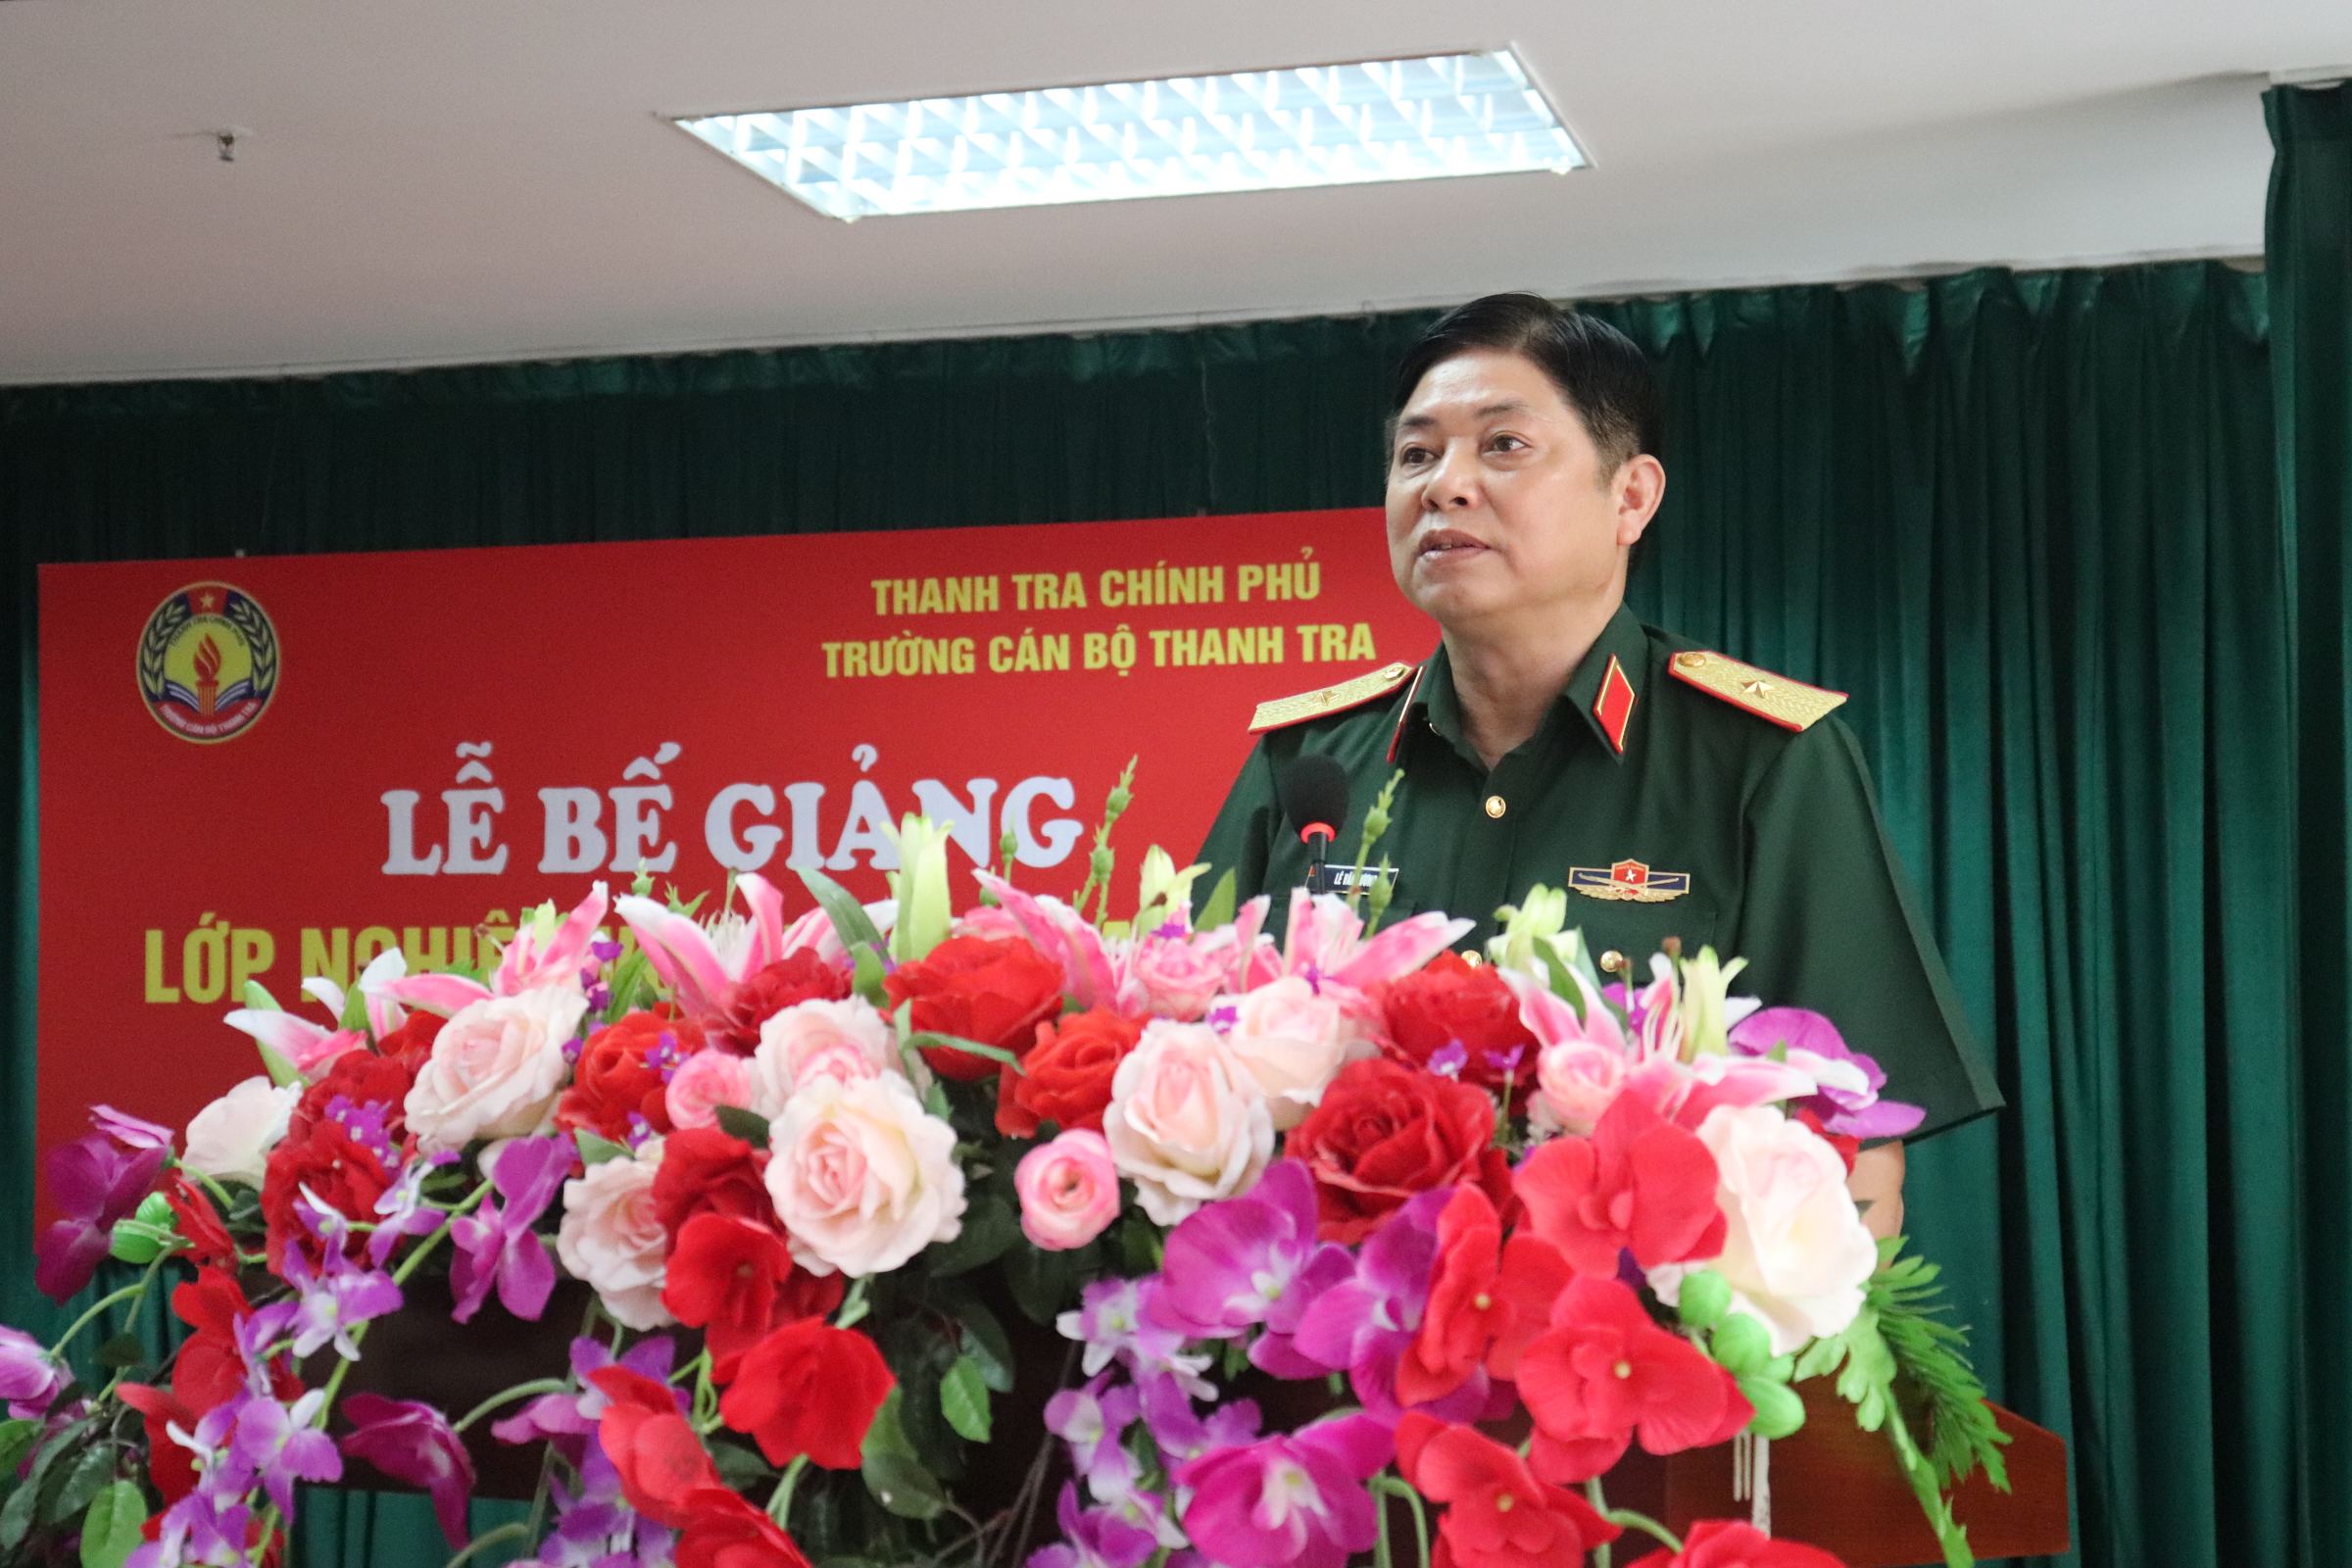 Thiếu tướng Lê Văn Lương PCTT Bộ Quốc phòng phát biểu tại lễ bế giảng